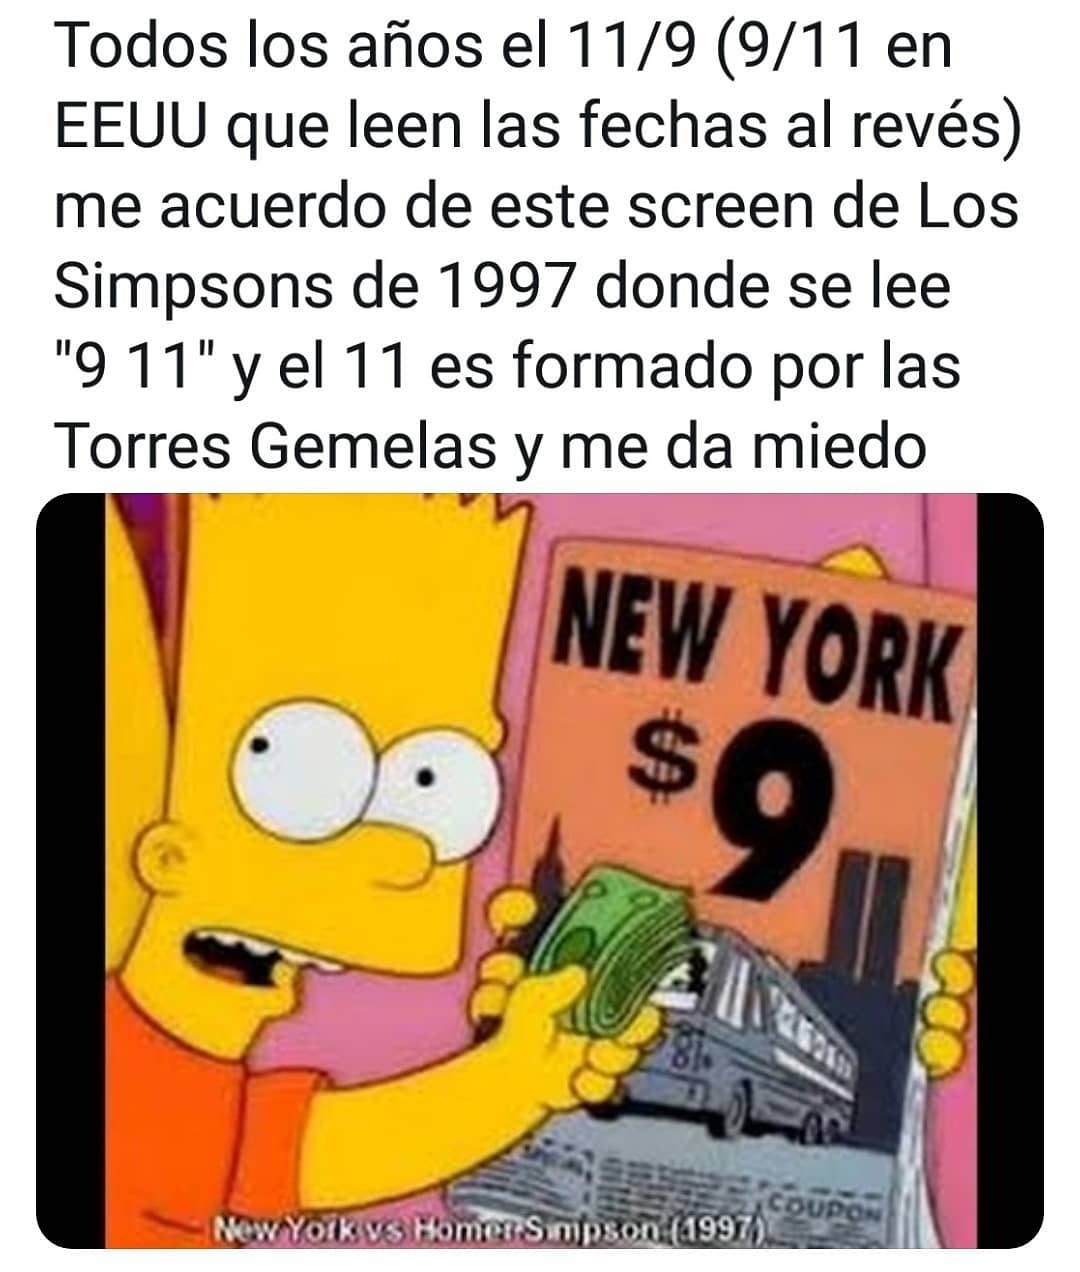 Todos los años el 11/9 (9/11 en EEUU que leen las fechas al revés) me acuerdo de este screen de Los Simpsons de 1997 donde se lee "9 11" y el 11 es formado por las Torres Gemelas y me da miedo.